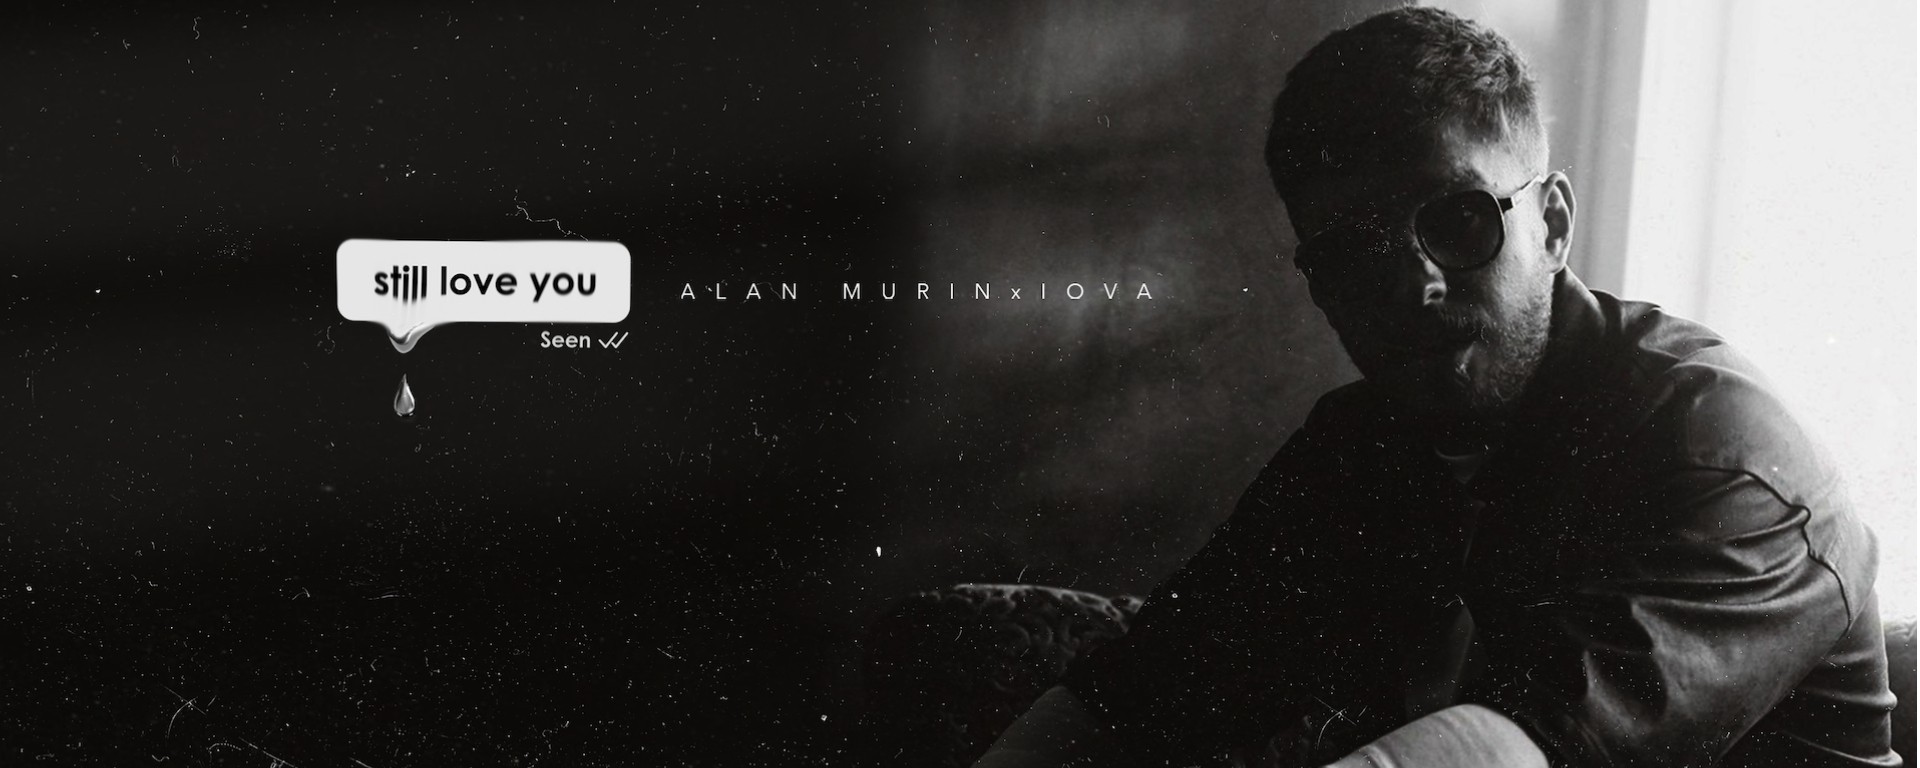 Alan Murin, Iova a Serban Cazan prichádzajú s hitom "Still Love You".